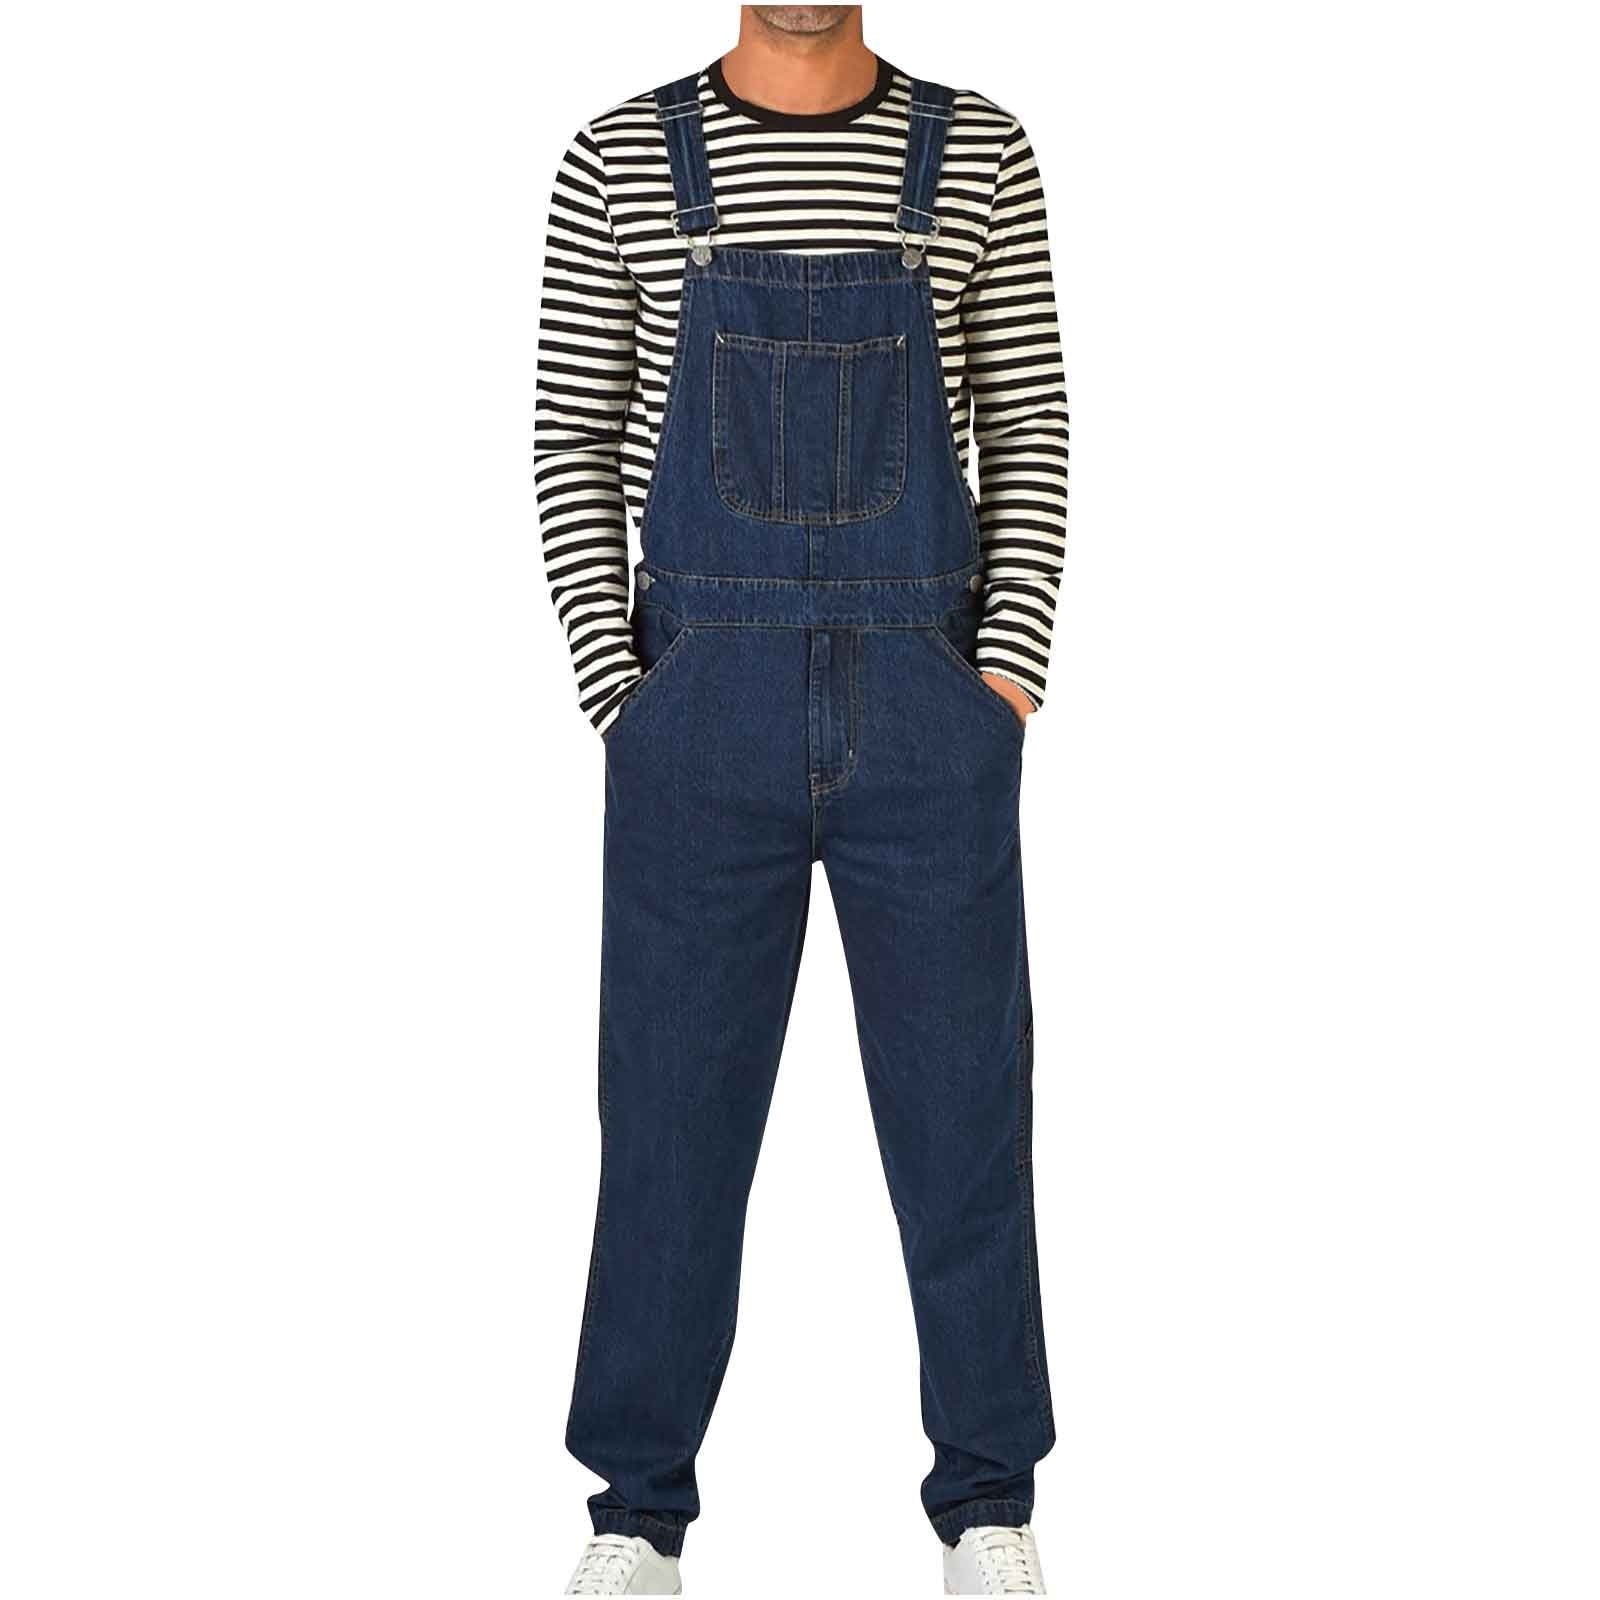 MEN DENIM OVERALL Jumpsuit Jeans Coat Suspender Romper Cowboy Loose Casual  Pants $69.48 - PicClick